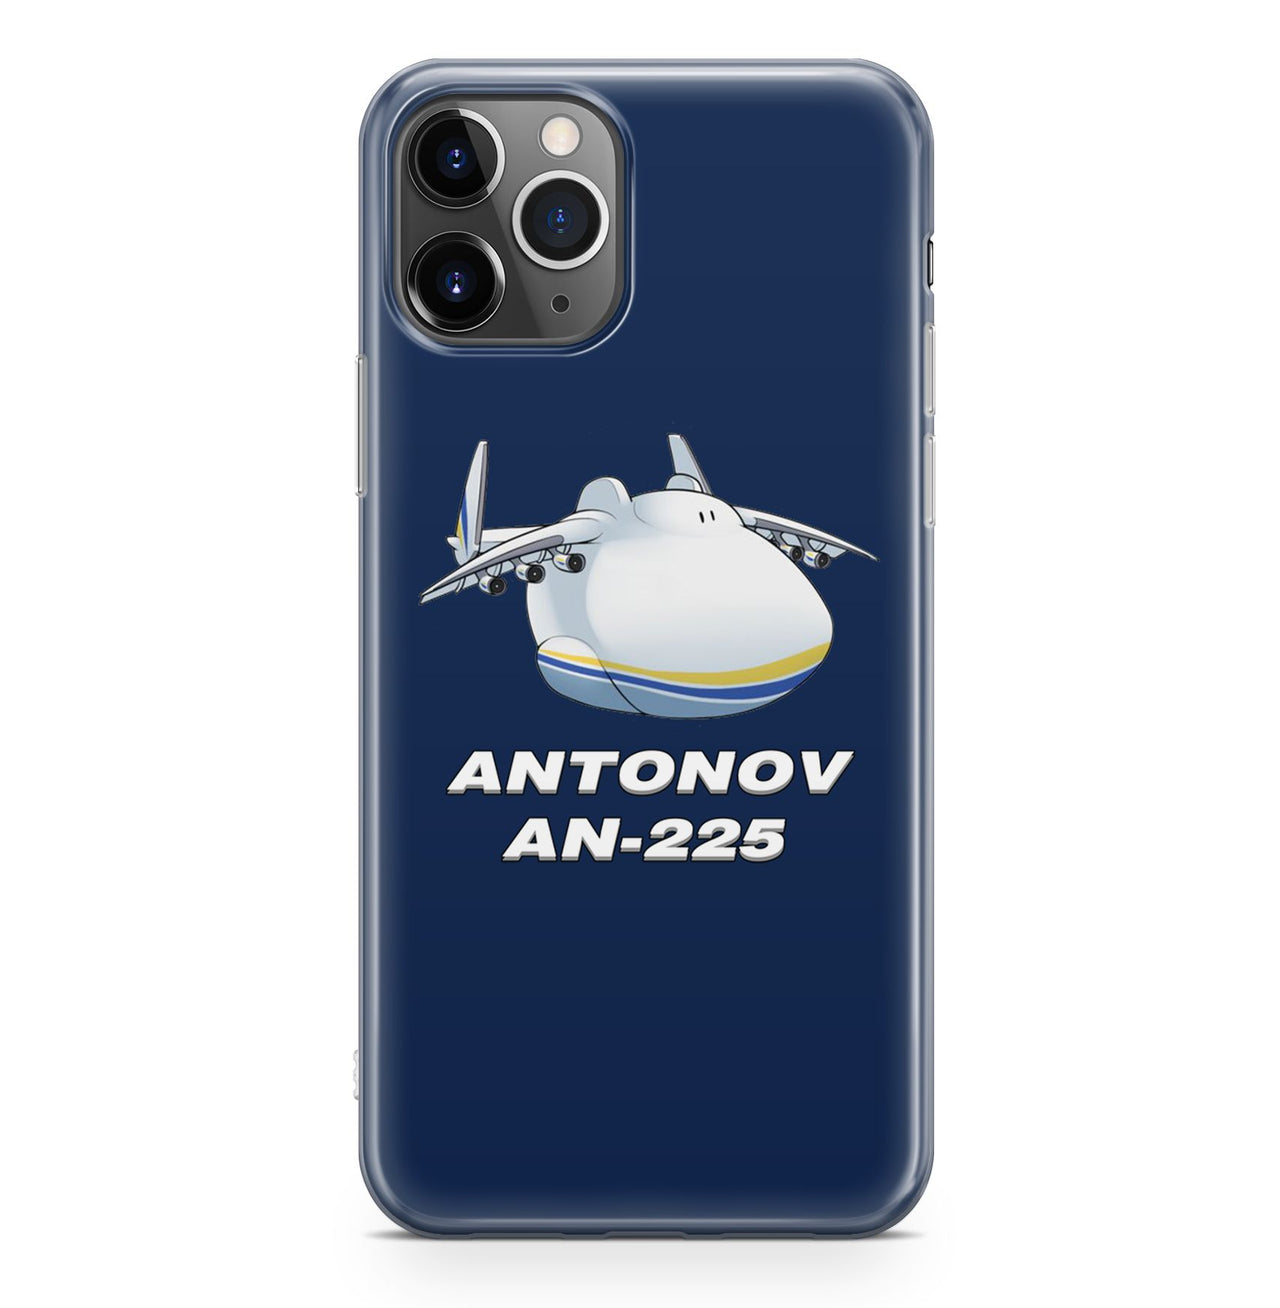 Antonov AN-225 (21) Designed iPhone Cases